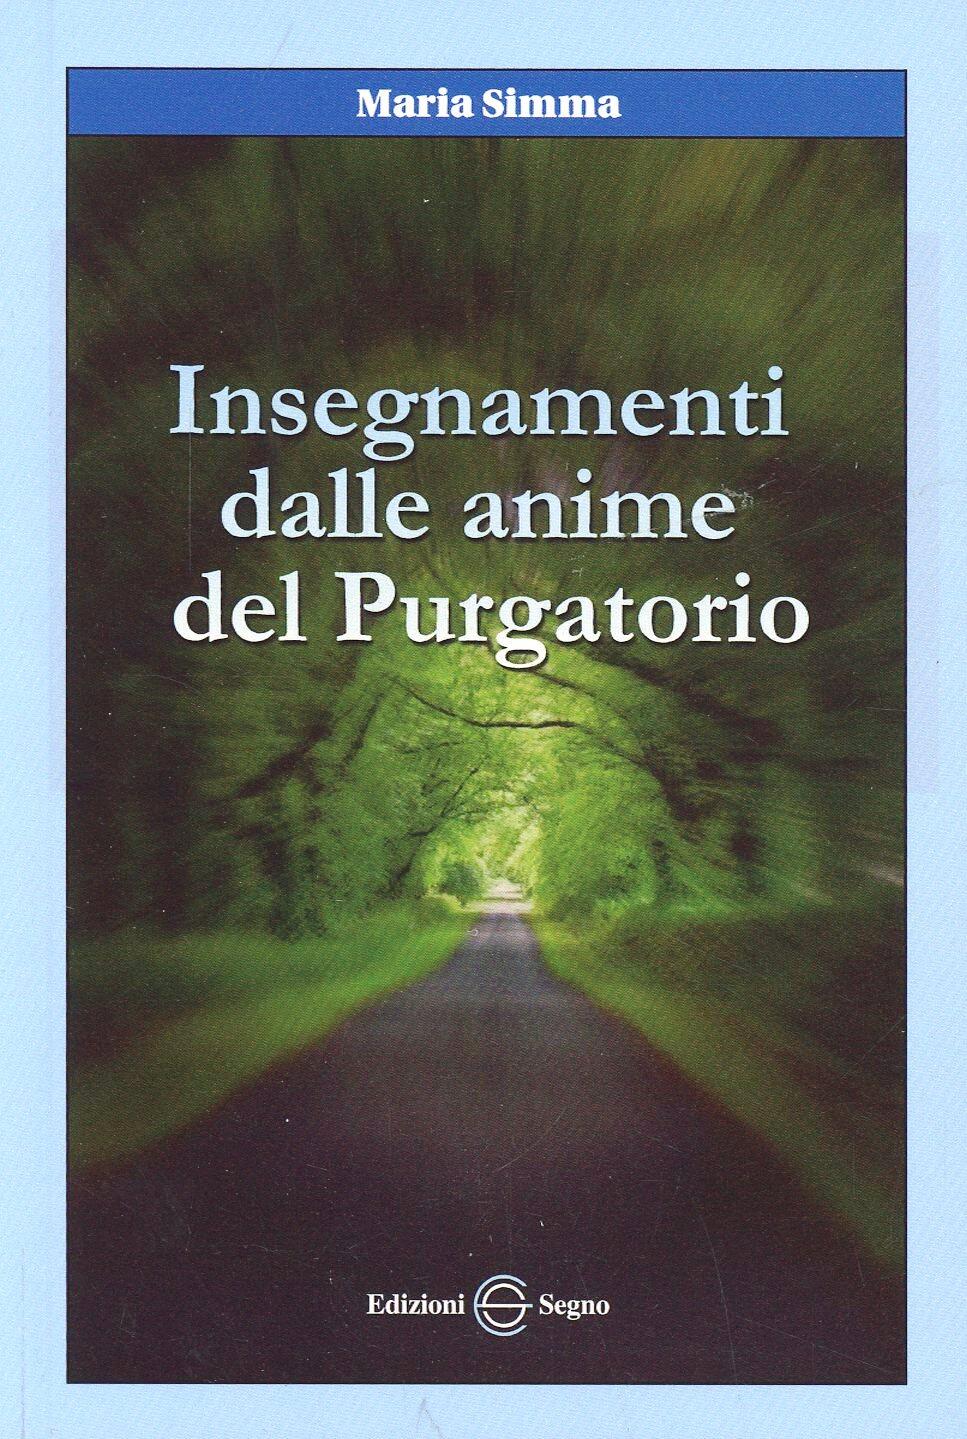 Insegnamenti dalle anime del purgatorio Maria Simma Libro Edizioni Segno IBS